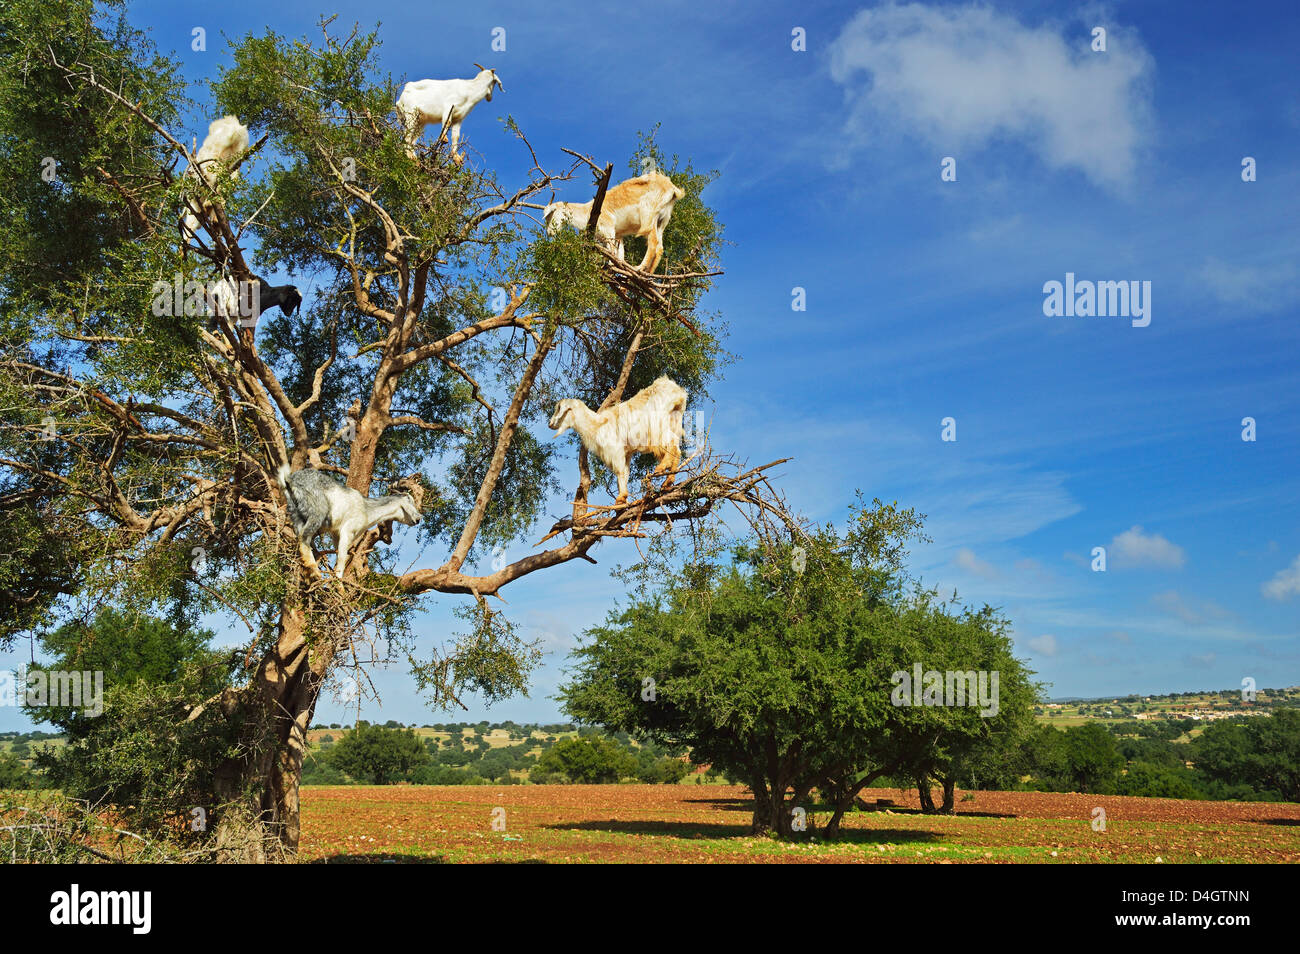 Chèvres sur arbre, Maroc, Afrique du Nord Banque D'Images